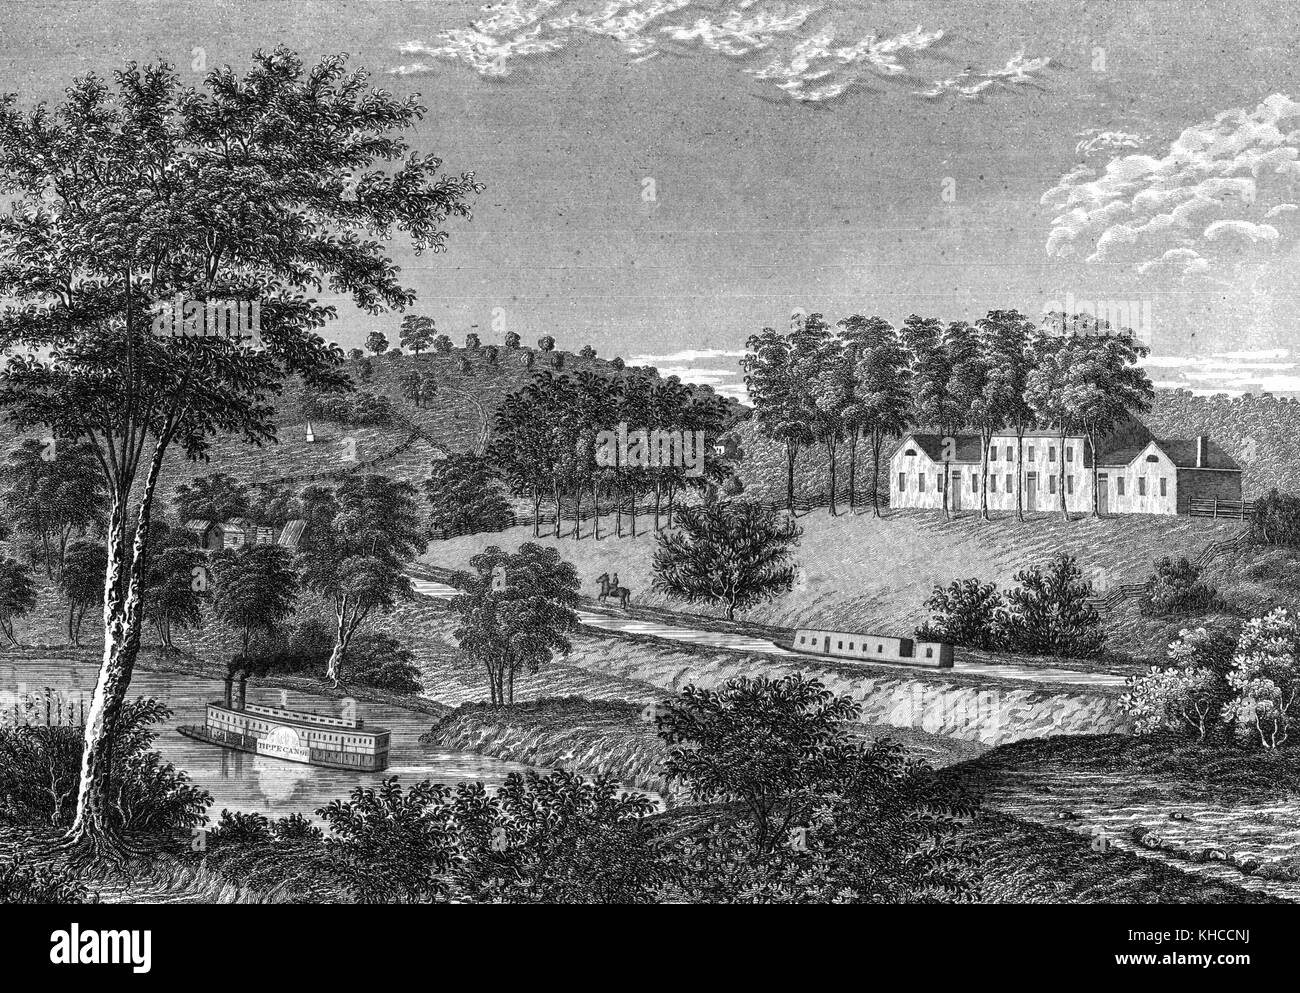 Gravure d'une peinture de paysage mettant en vedette la résidence de William Henry Harrison, paysage est composé d'arbres et de collines basses, un bateau est vu voyager sur la rivière, North Bend, Ohio, 1843. De la bibliothèque publique de New York. Banque D'Images